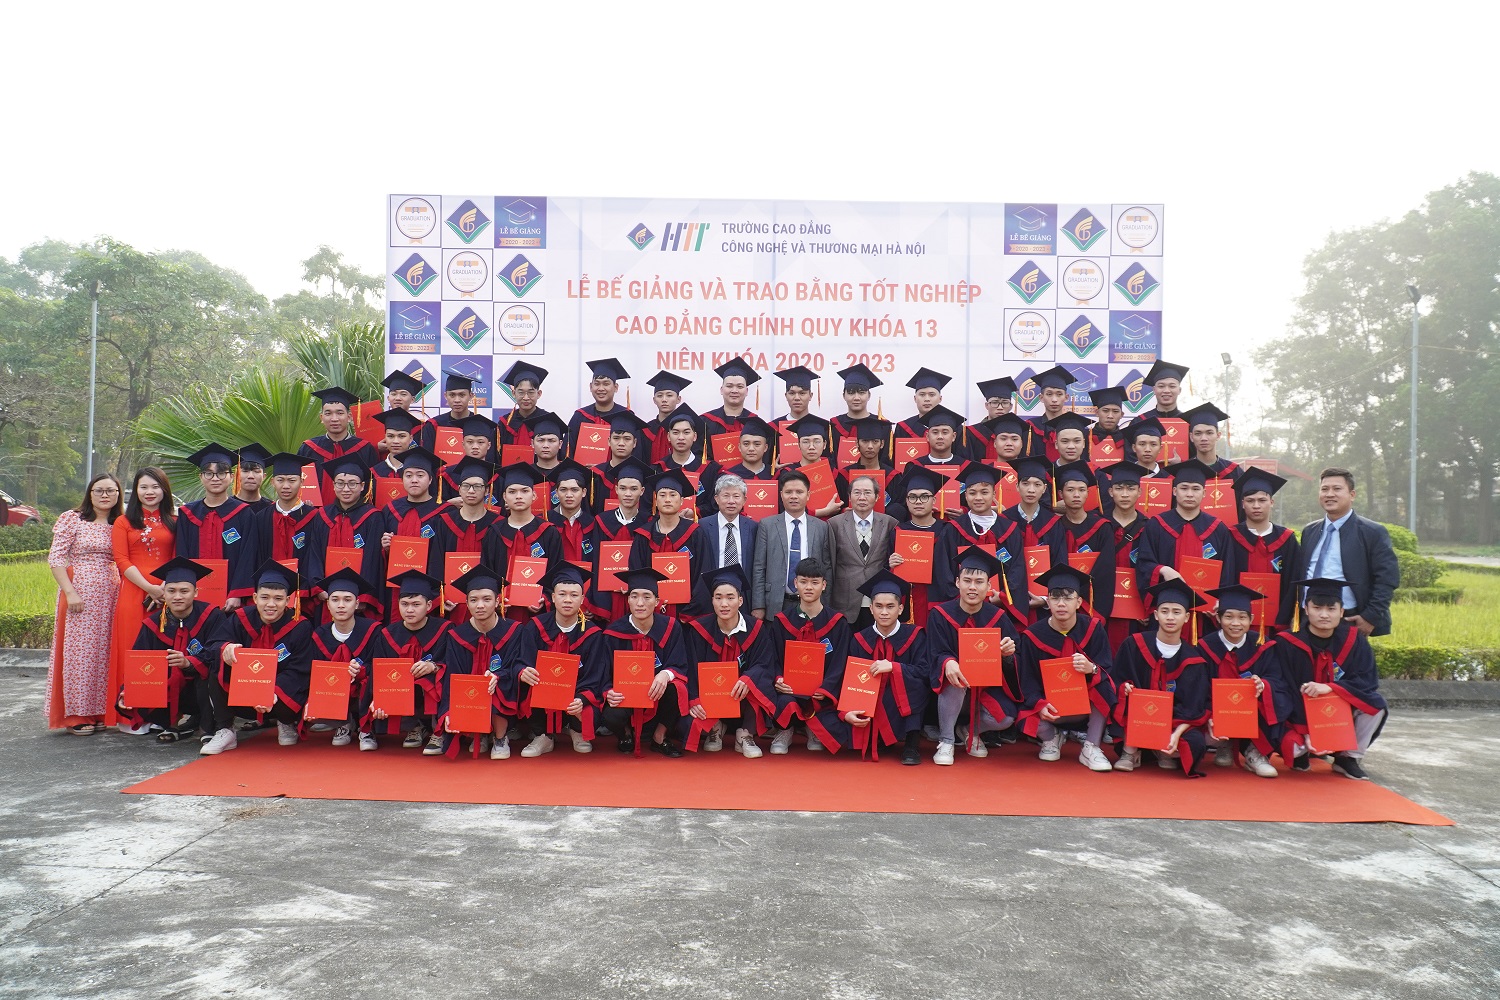 Lễ bế giảng và trao bằng tốt nghiệp Cao đẳng chính quy đợt 1 cho sinh viên K13 (2020 – 2023)